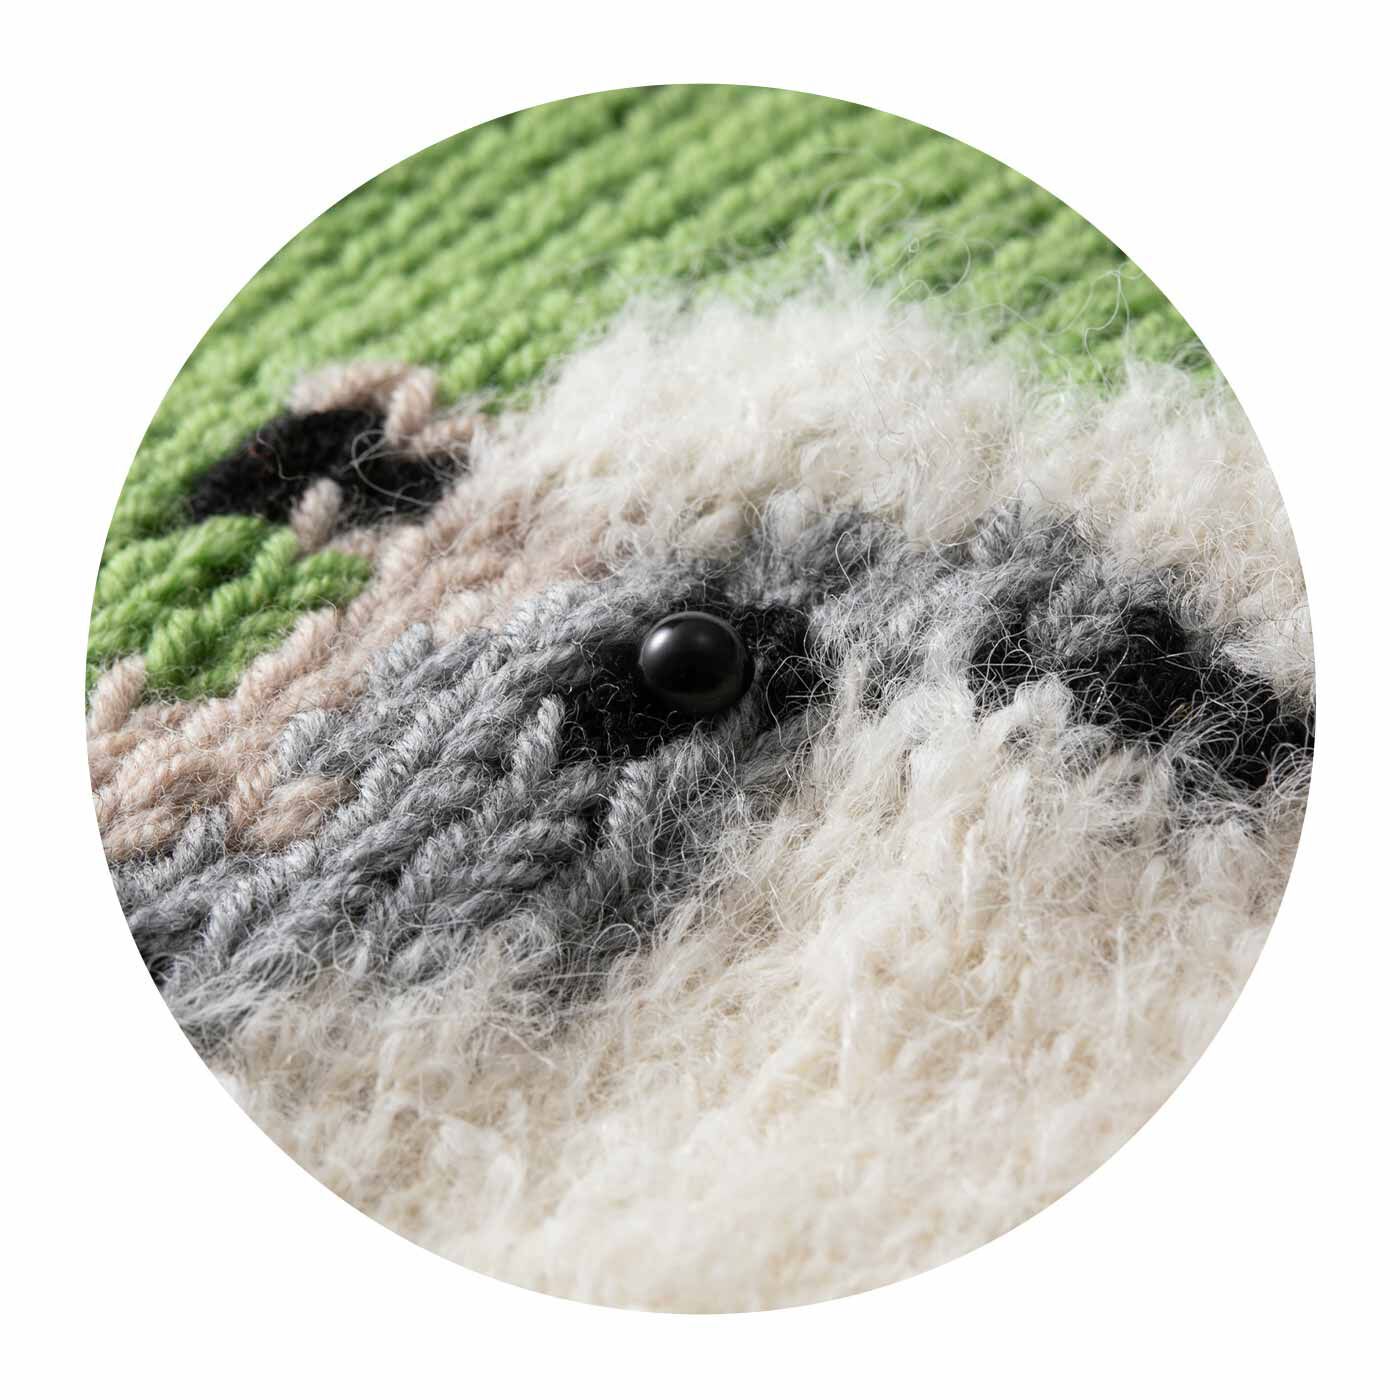 クチュリエ|思わずなでなでしたくなる ファンシーヤーンの編み込み動物バッグの会|ふわふわのファンシーヤーンで羊の毛並みを再現。ボタンの瞳がつぶらでかわいい。